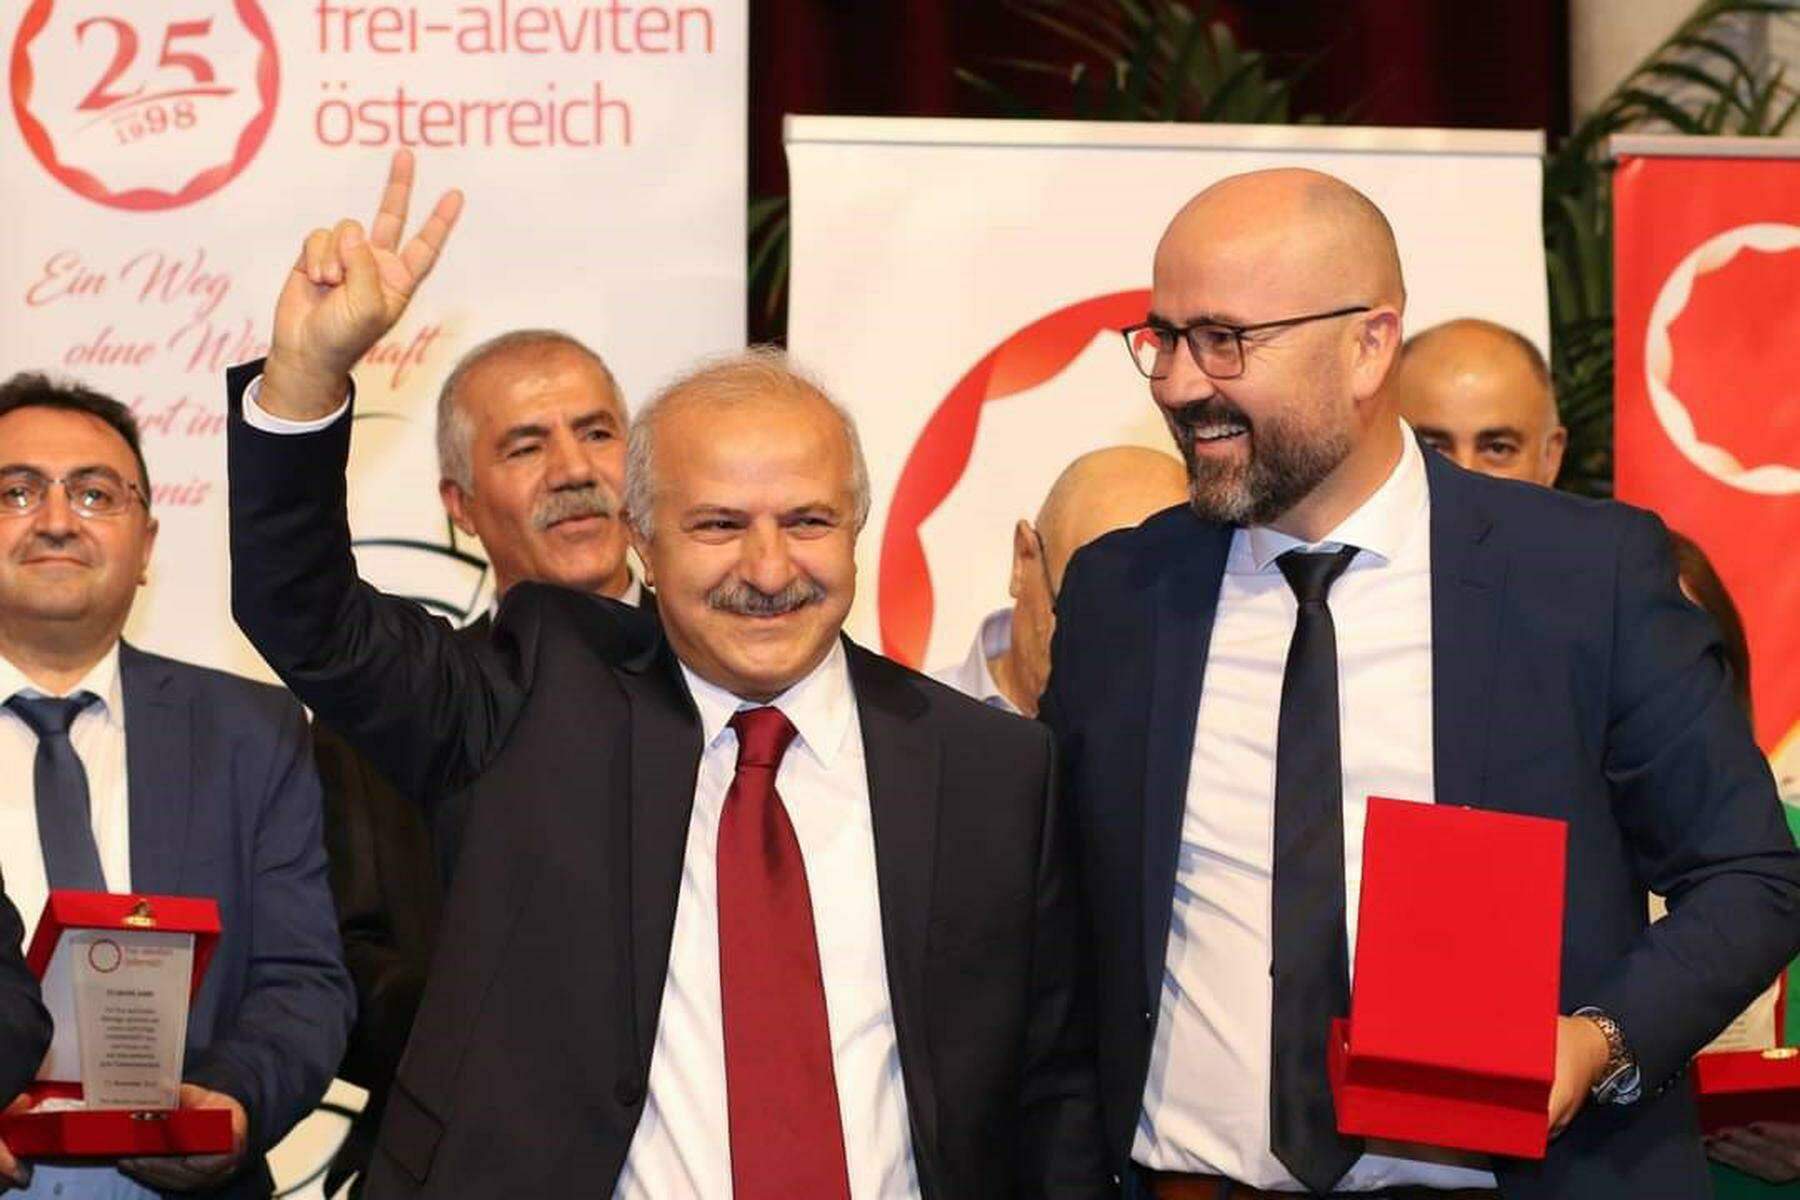 festnahme und befragung in istanbul: österreichischer präsident der aleviten darf nicht ausreisen